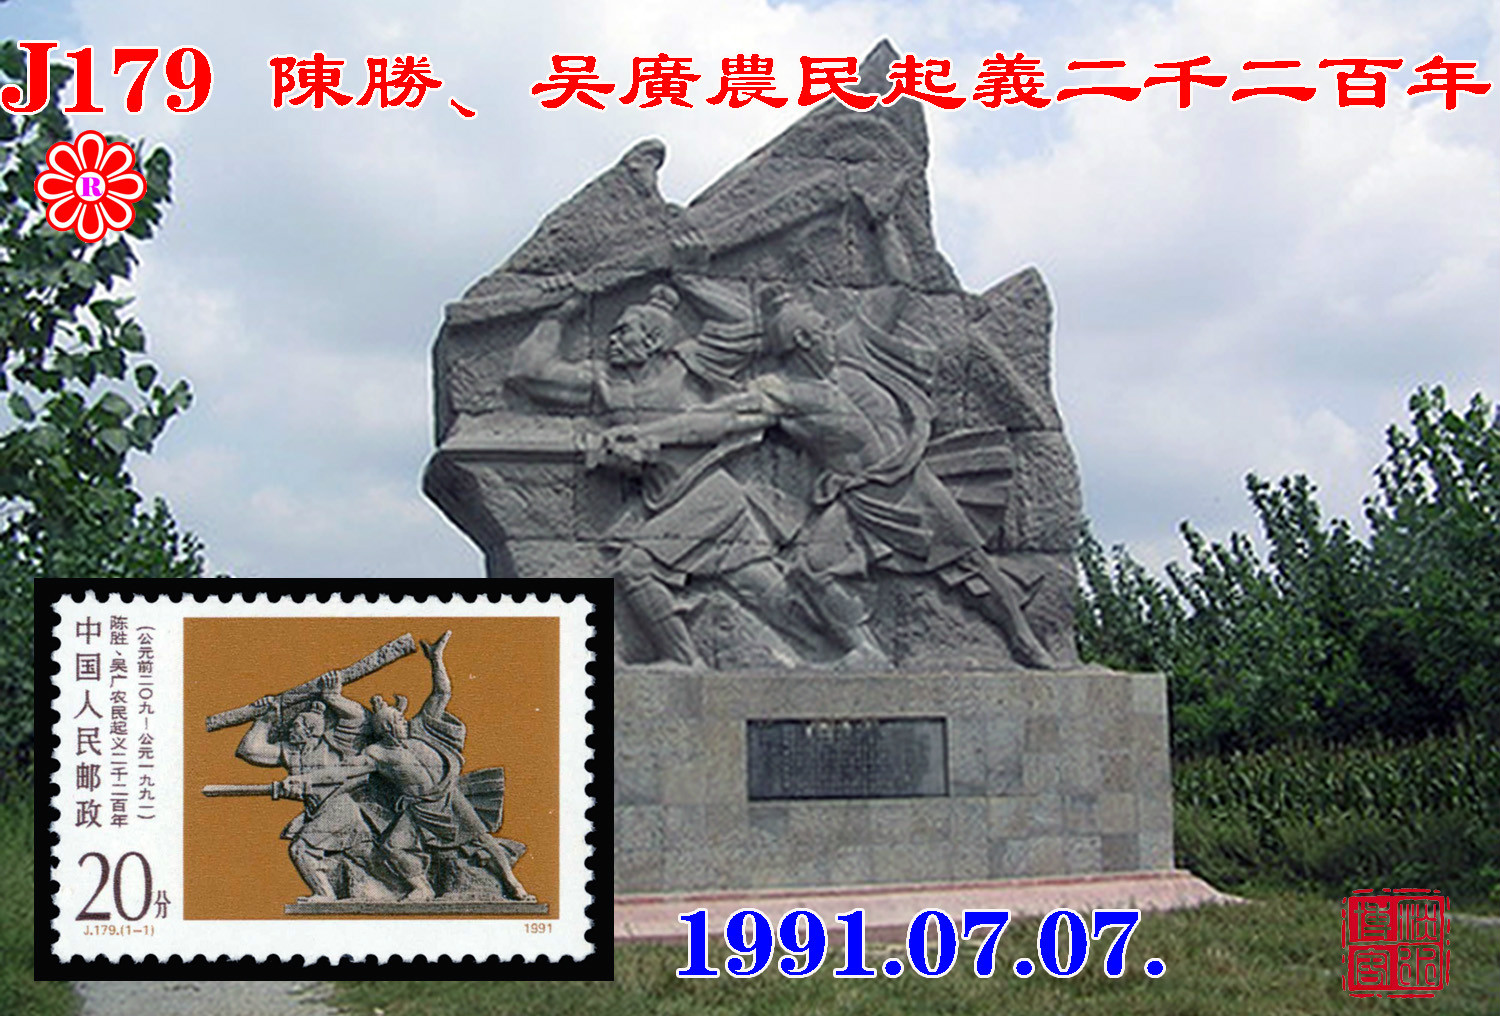 J179陳勝、吳廣農民起義二千二百年